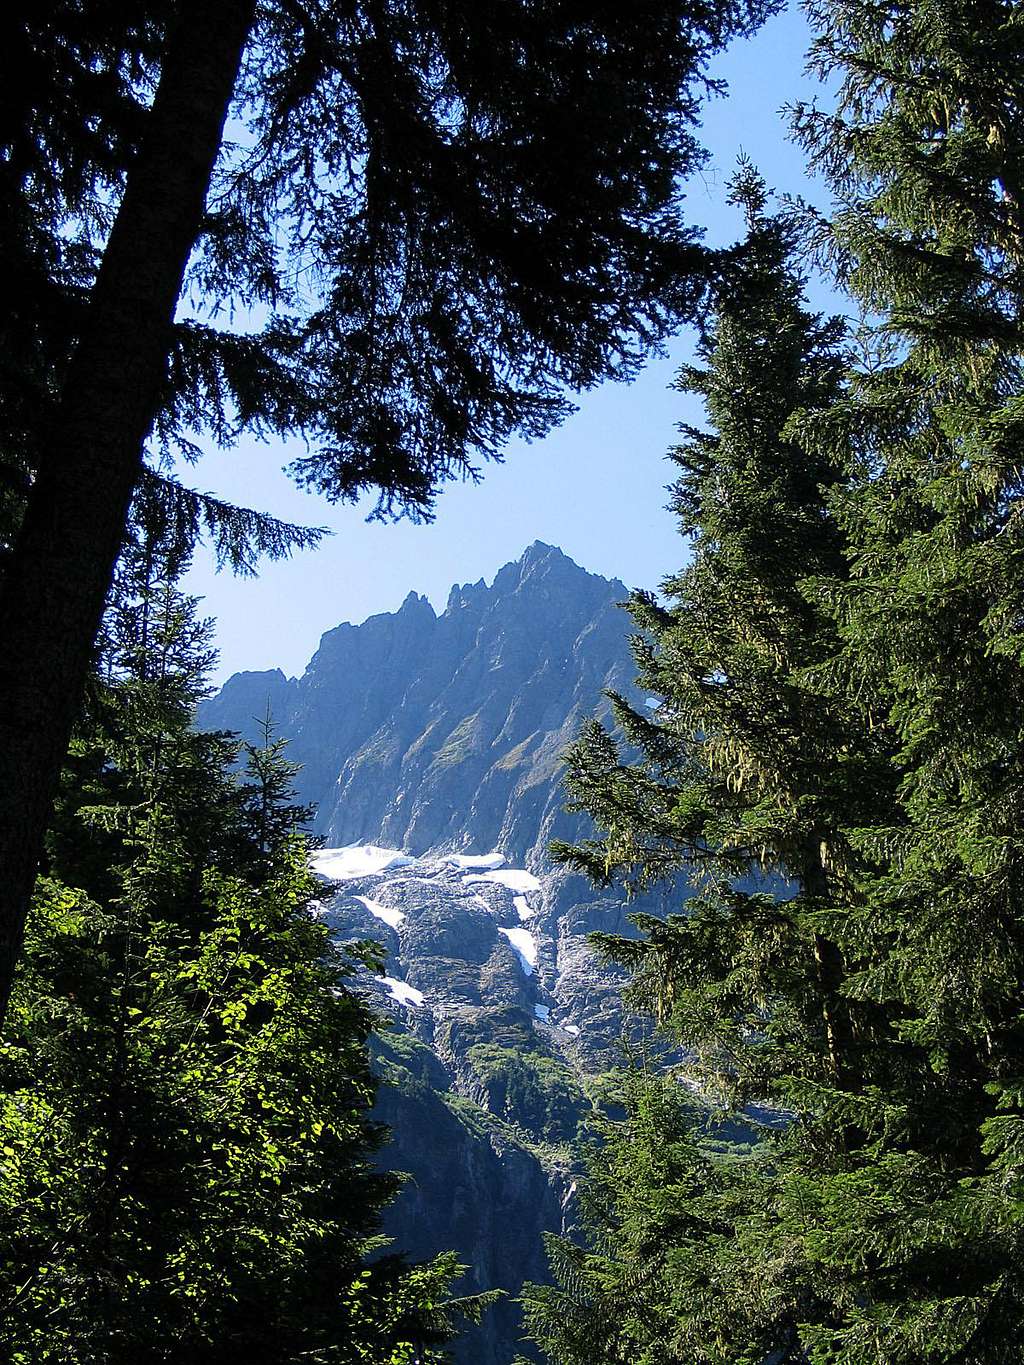 Johannesberg Mountain